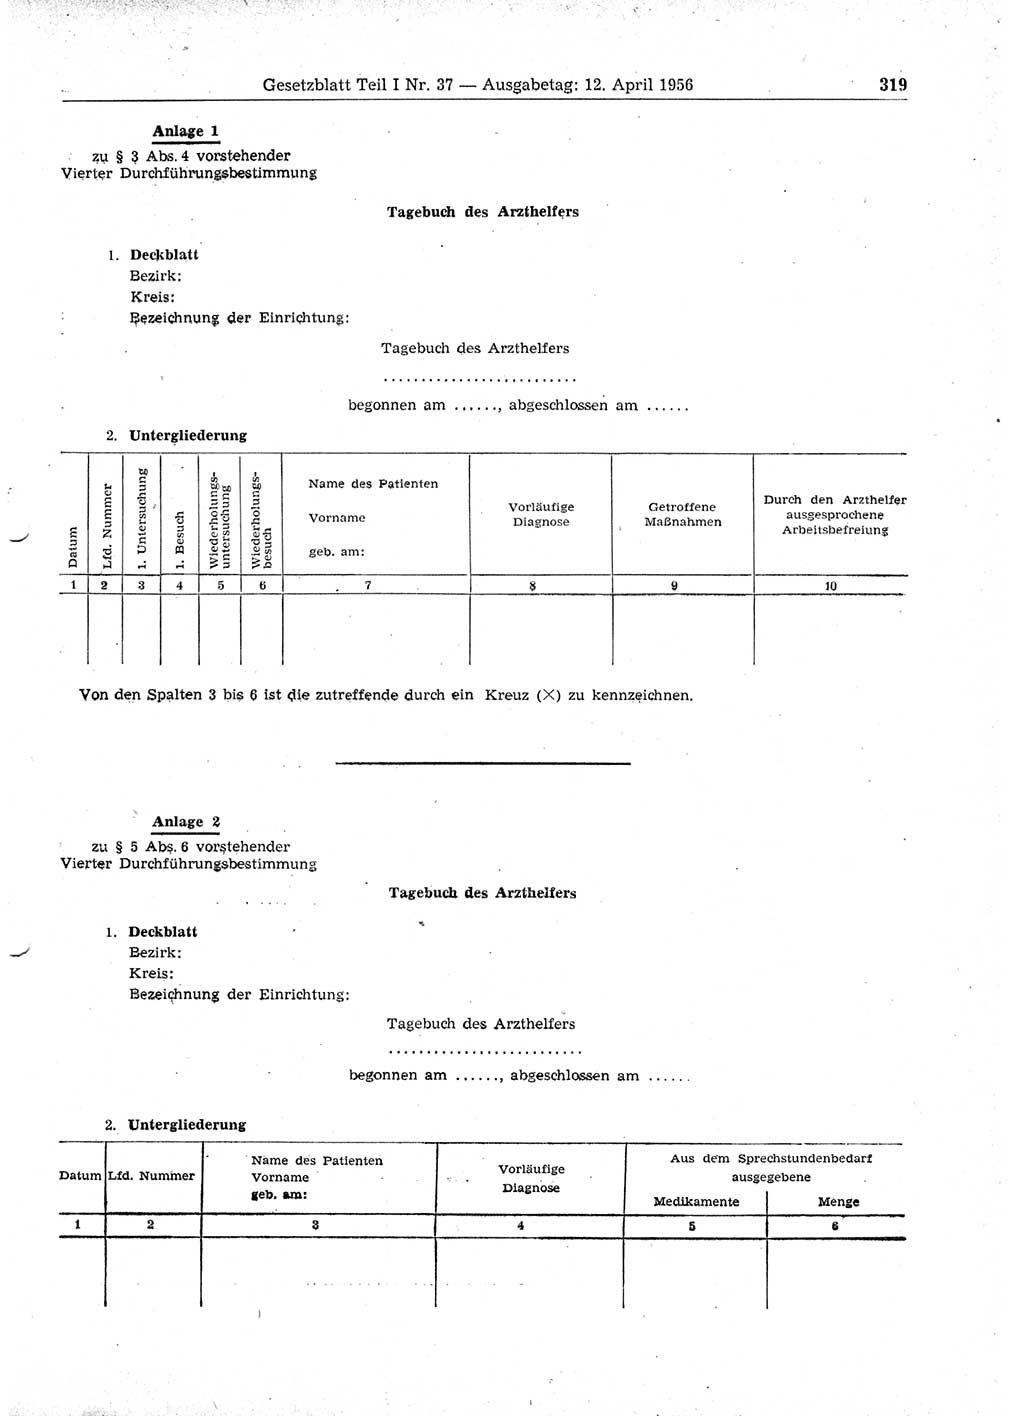 Gesetzblatt (GBl.) der Deutschen Demokratischen Republik (DDR) Teil Ⅰ 1956, Seite 319 (GBl. DDR Ⅰ 1956, S. 319)